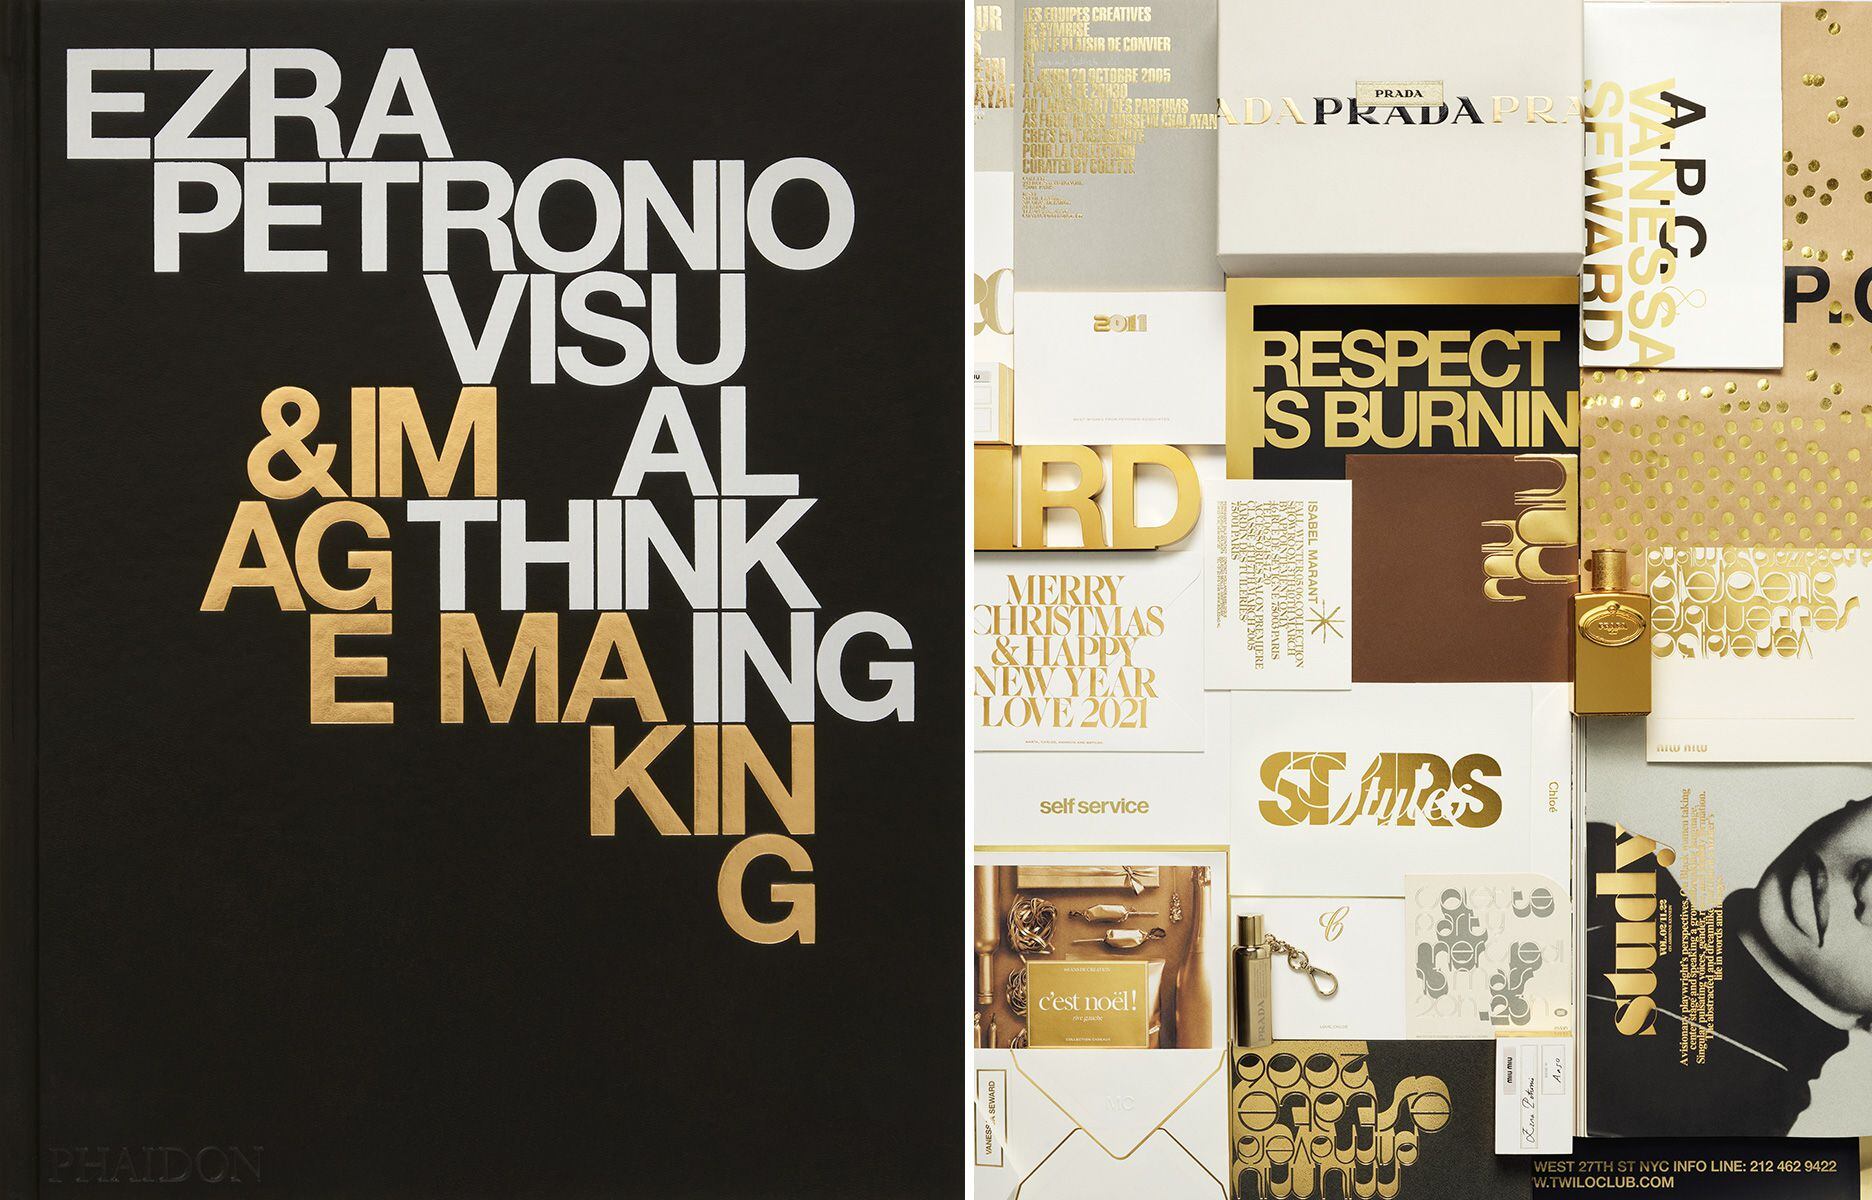 Portada del libro Ezra Petronio. Visual Thinking & Image Maker (Phaidon) y collage con distintos trabajos.